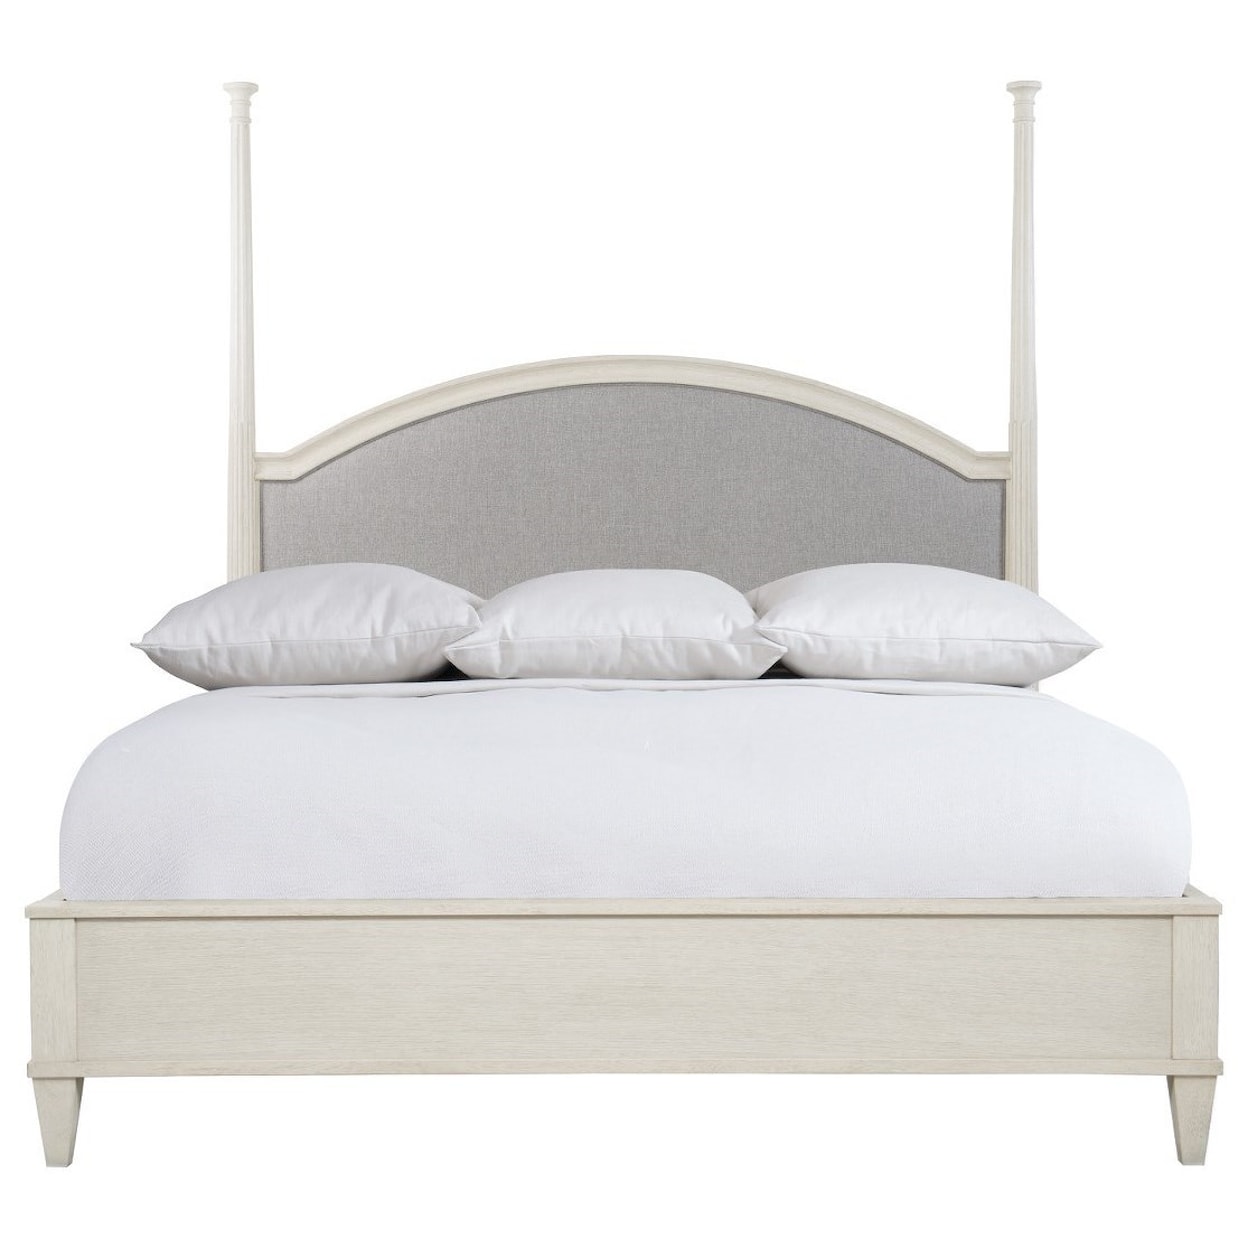 Bernhardt Allure Upholstered Panel Queen Bed